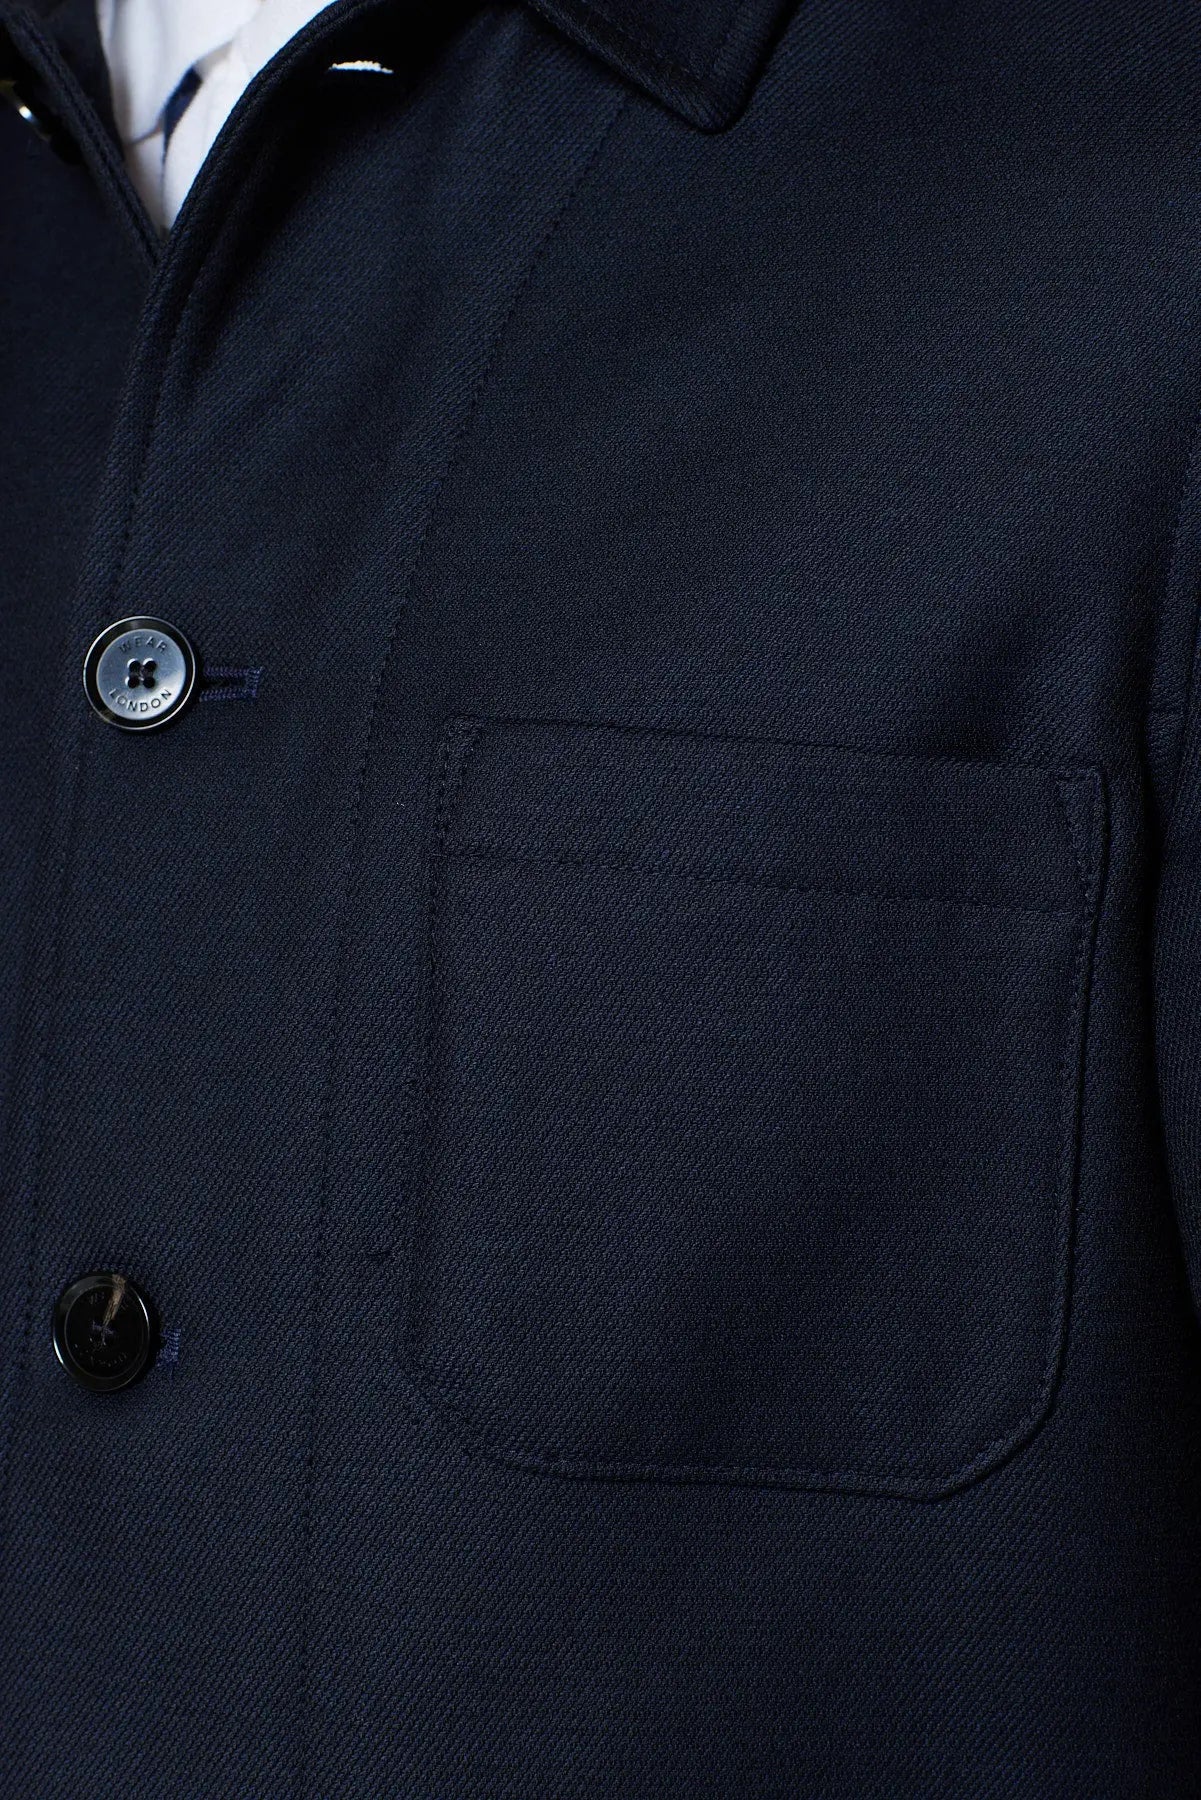 Billingham Jacket - Dark Navy Twill - Wear London